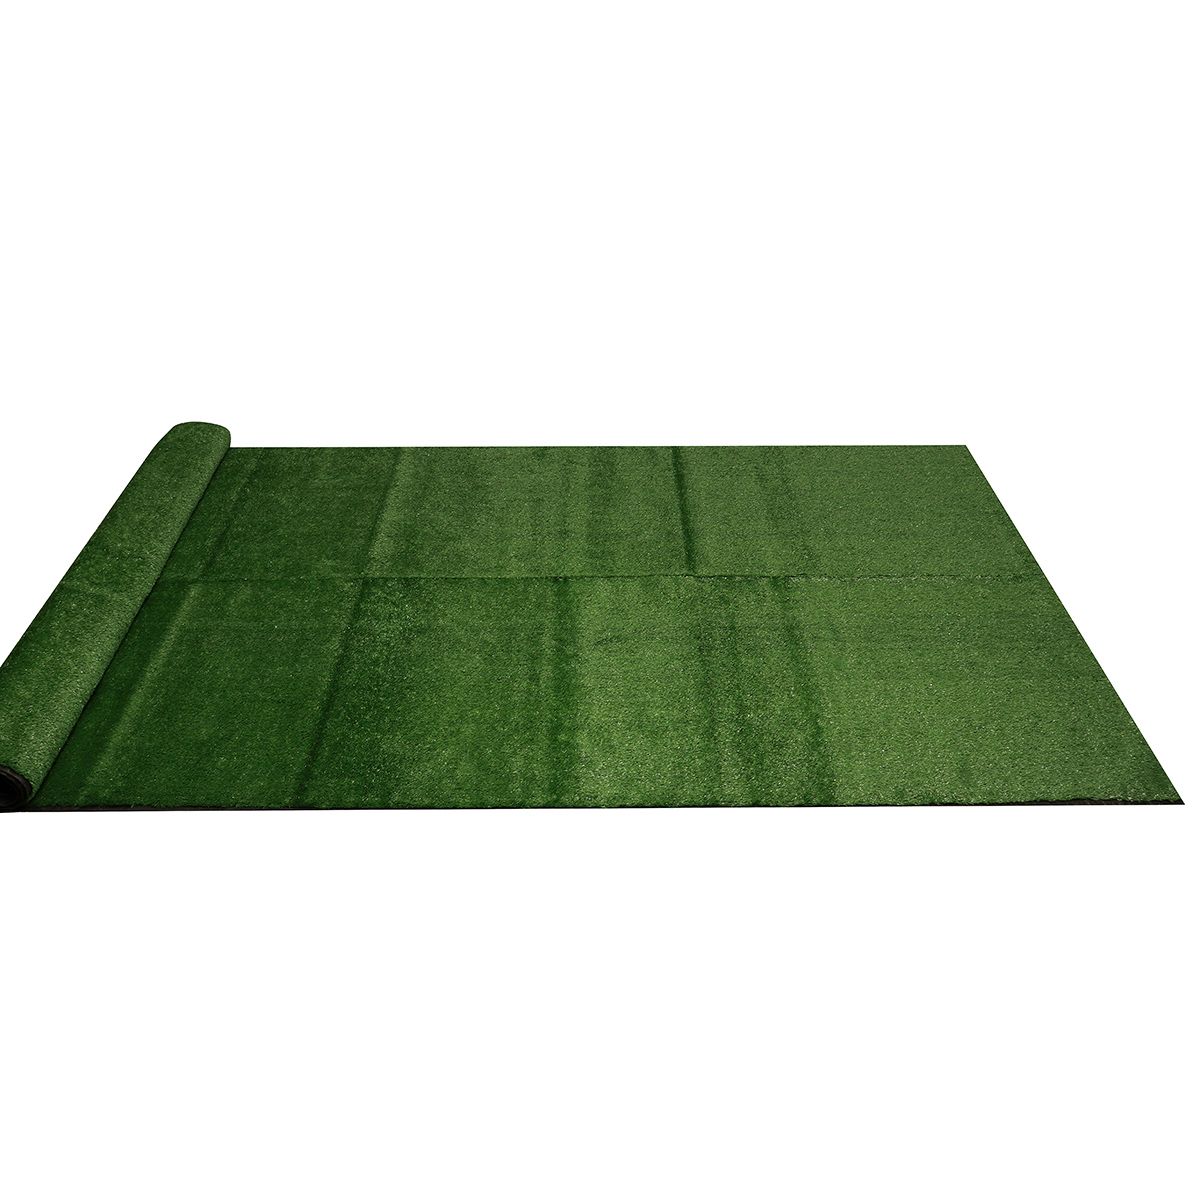 15mm-Artificial-Grass-Mat-Lawn-Synthetic-Green-Yard-Garden-InOutdoor-1715021